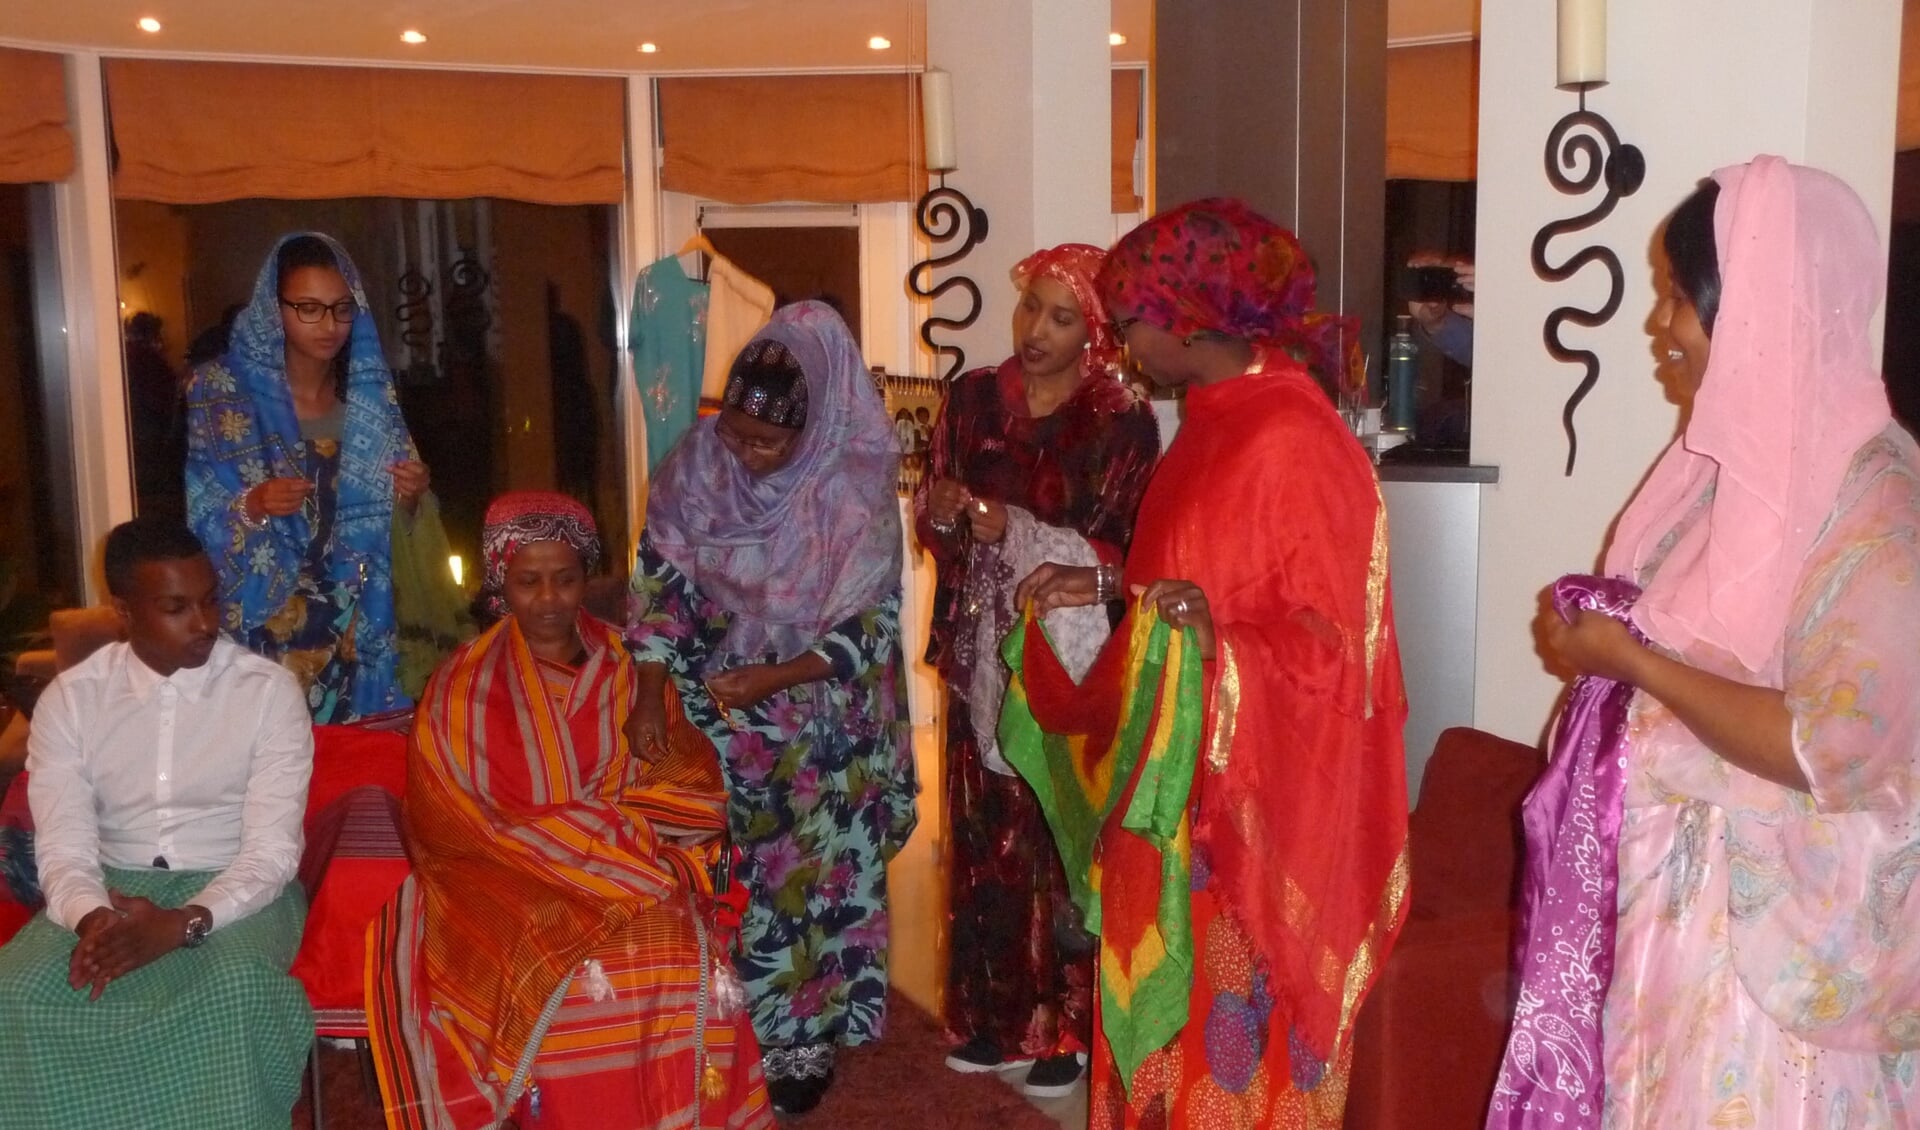 Zonnebloemvrijwilligers maken kennis met de Somalische cultuur.